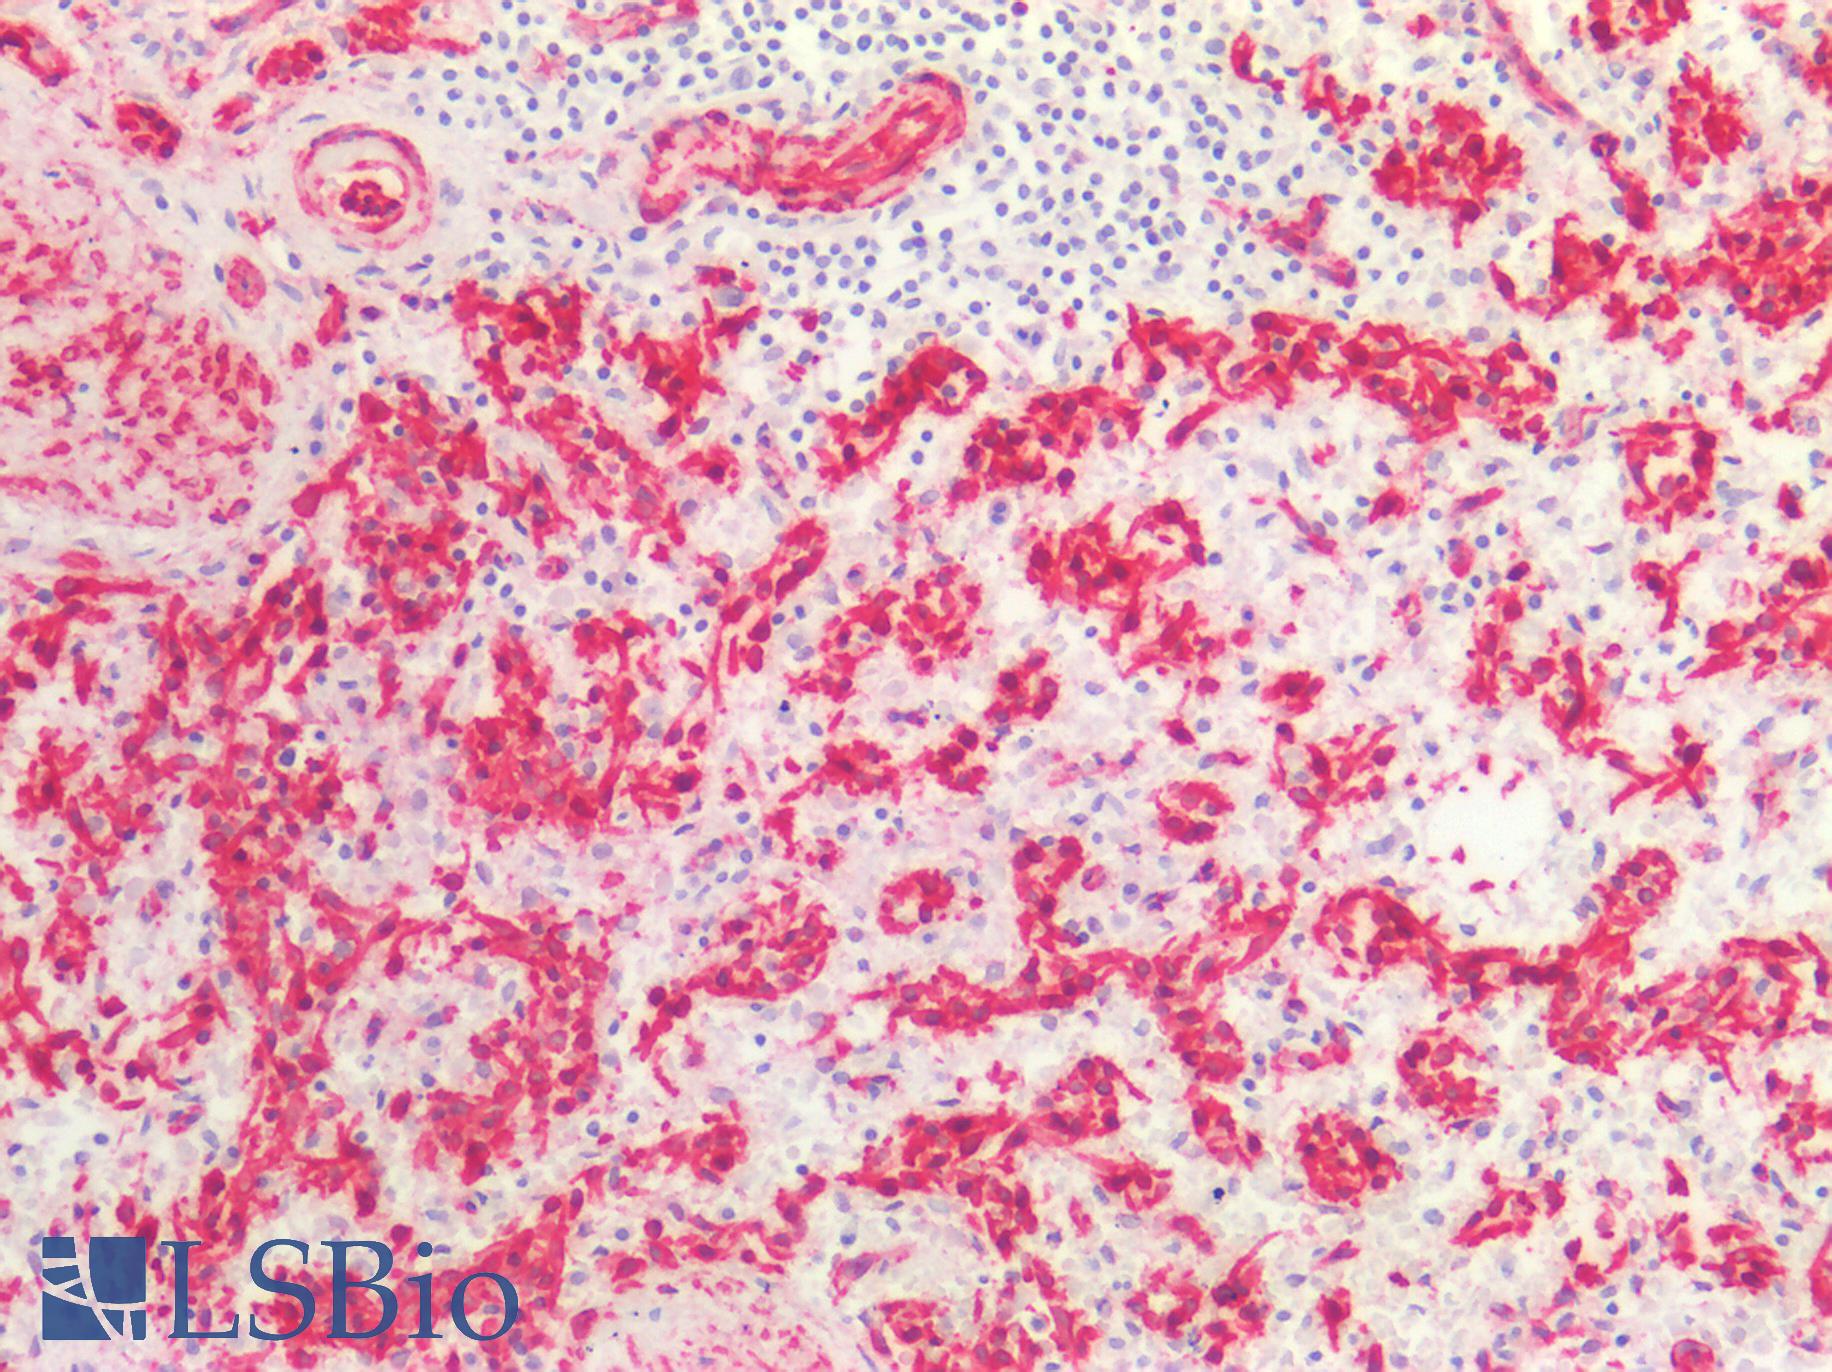 CAV1 / Caveolin 1 Antibody - Human Spleen: Formalin-Fixed, Paraffin-Embedded (FFPE)